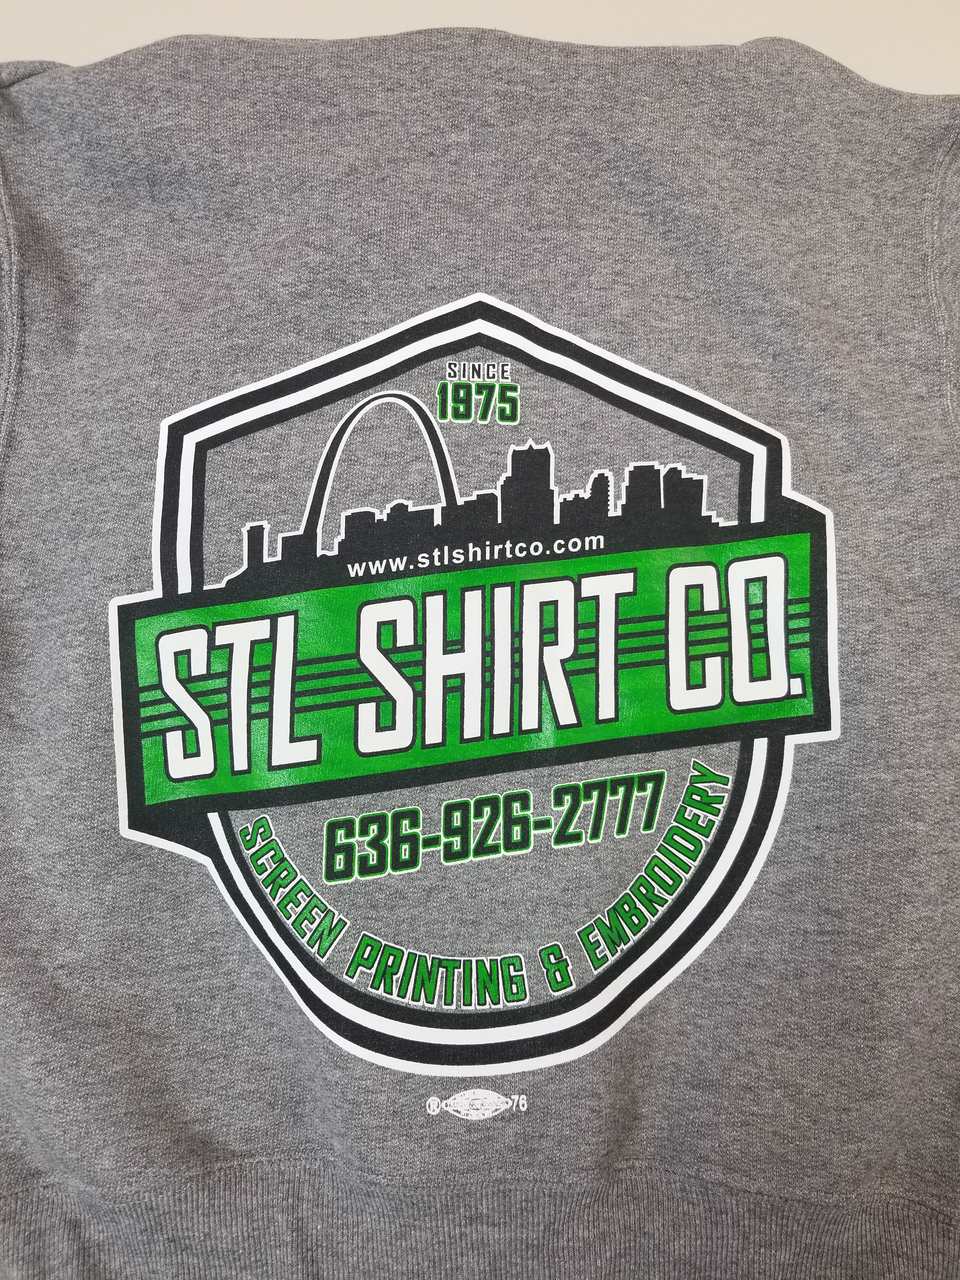 Rush T-Shirt Orders Cary, NC | Custom T-Shirts | STL Shirt Co.